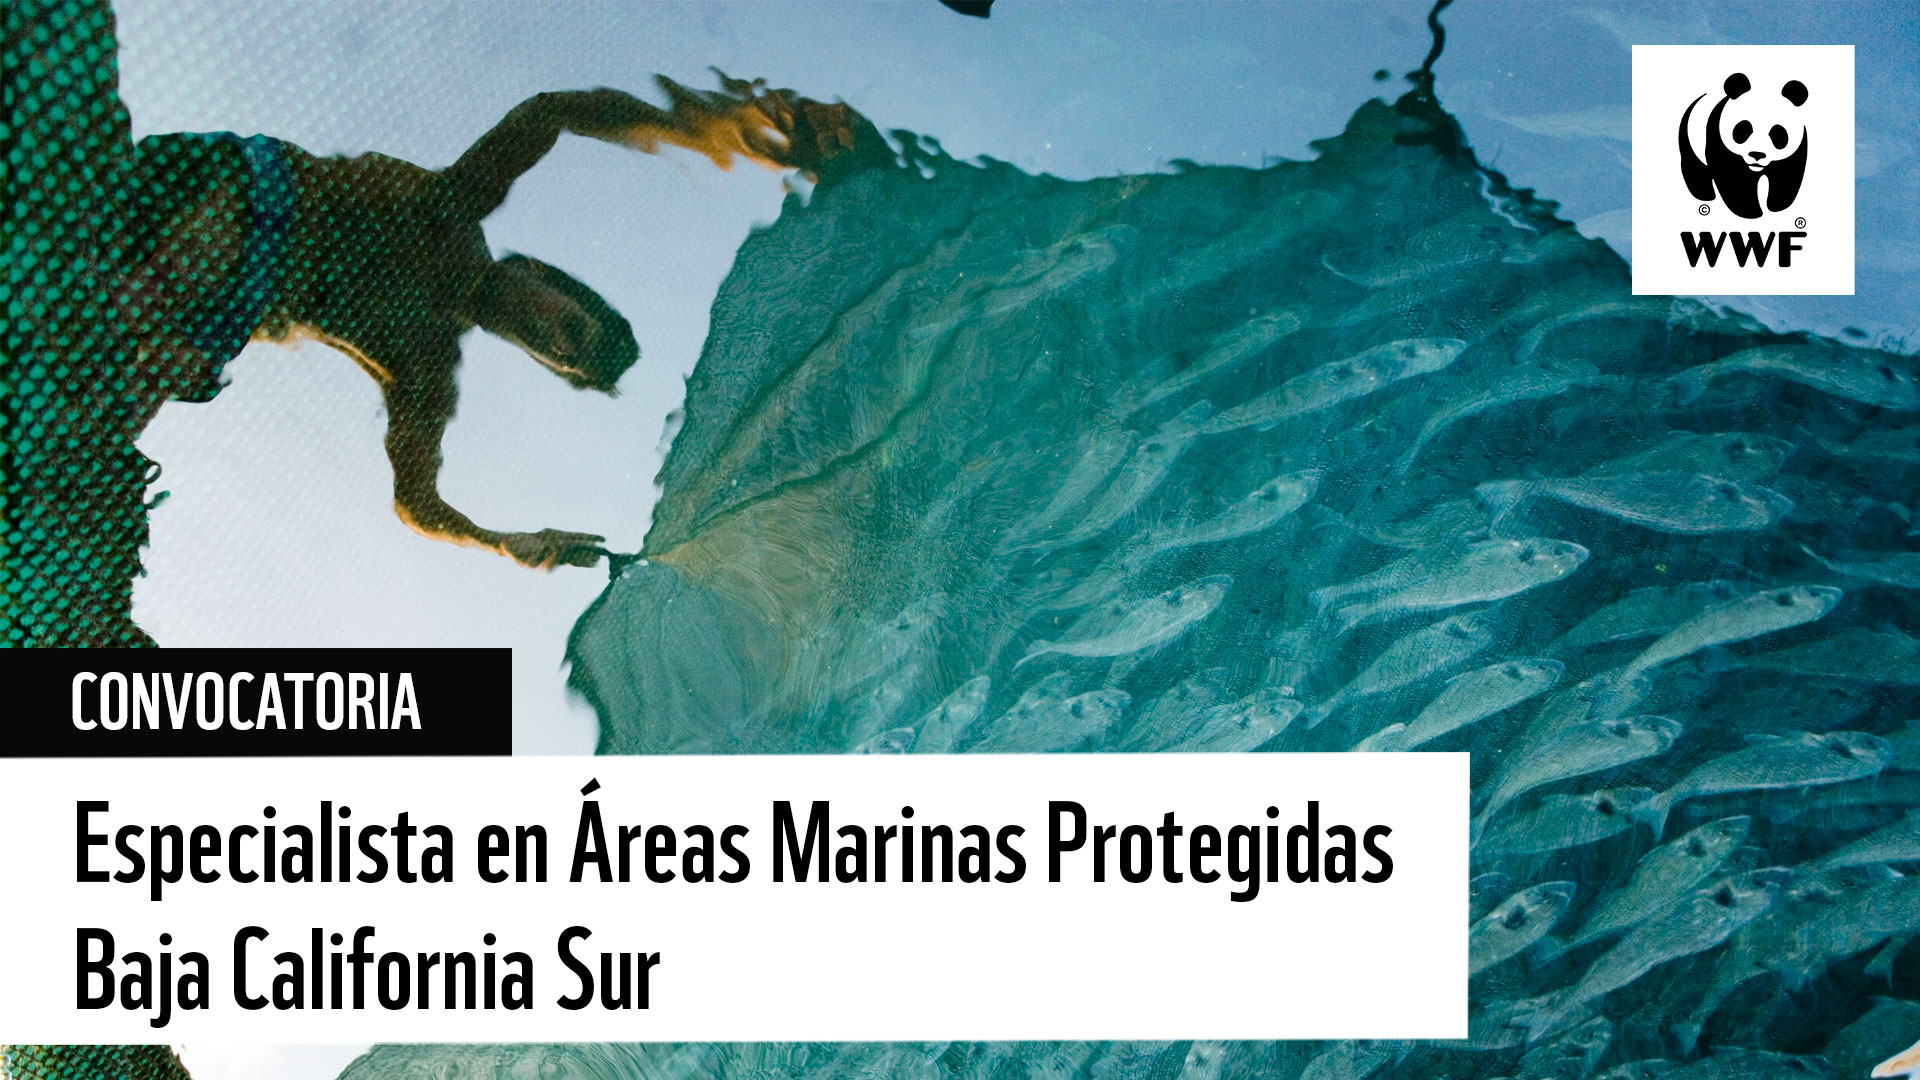 Vacante: Especialista en Áreas Marinas Protegidas – Baja California Sur (La Paz)